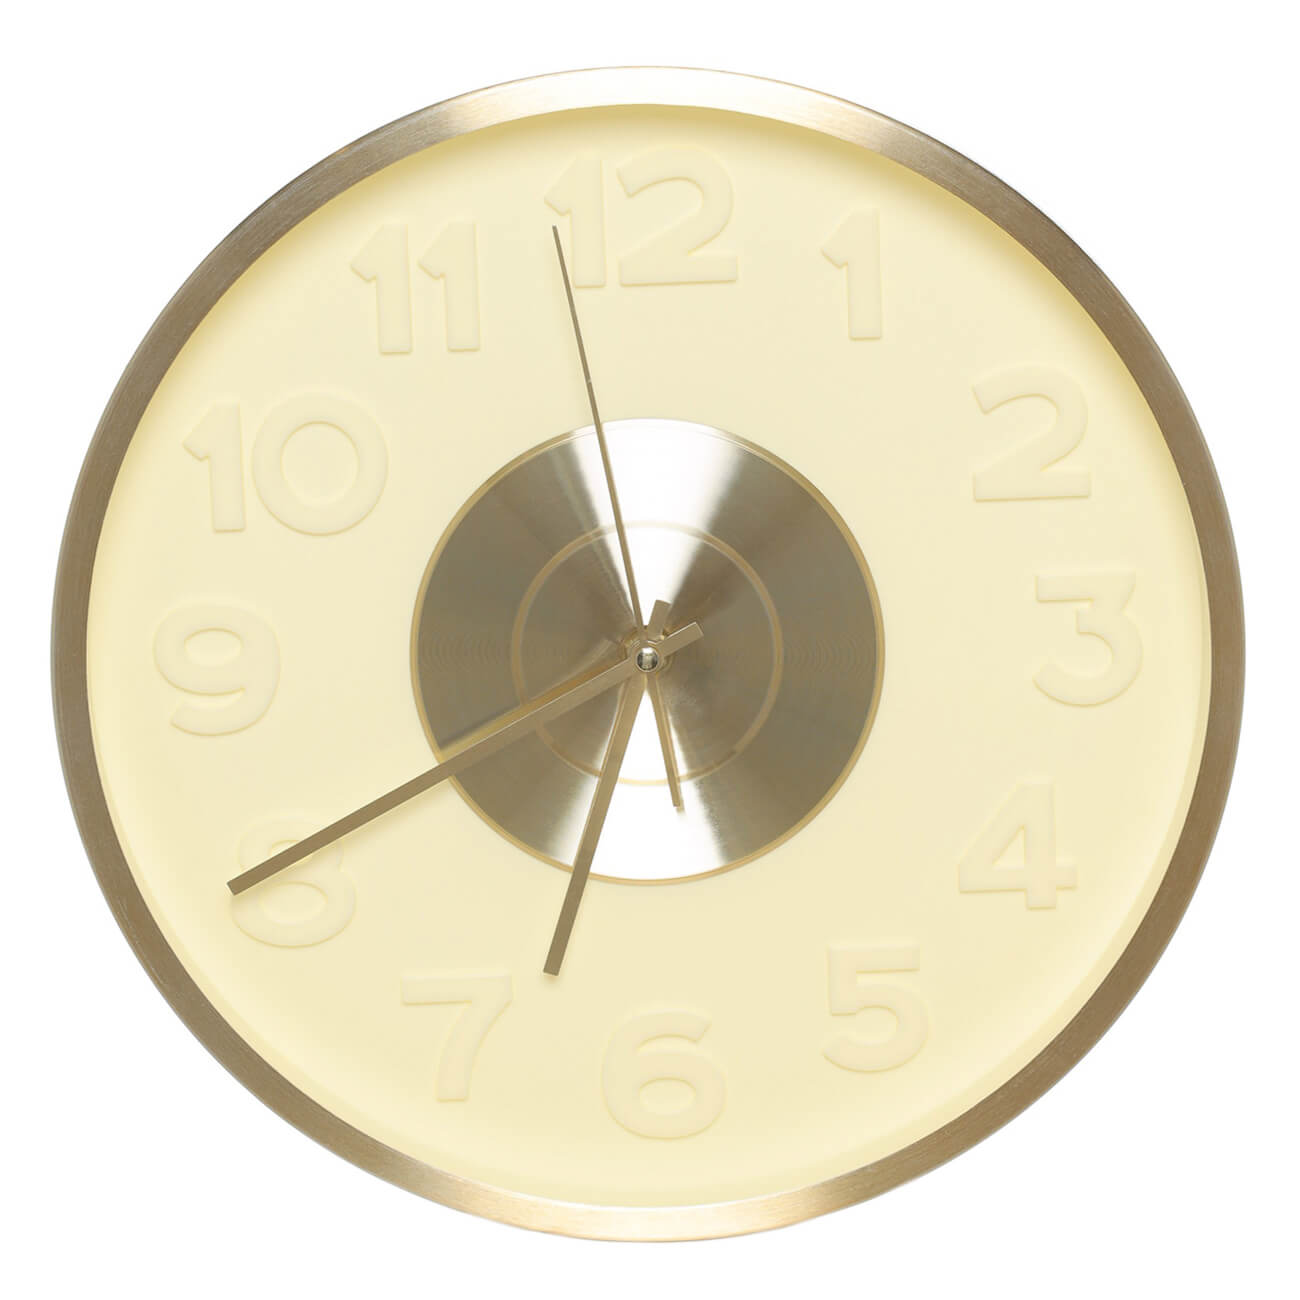 Часы настенные, 30 см, с подсветкой, пластик/стекло, круглые, золотистые, Fantastic gold r watanabe copper clock часы настенные